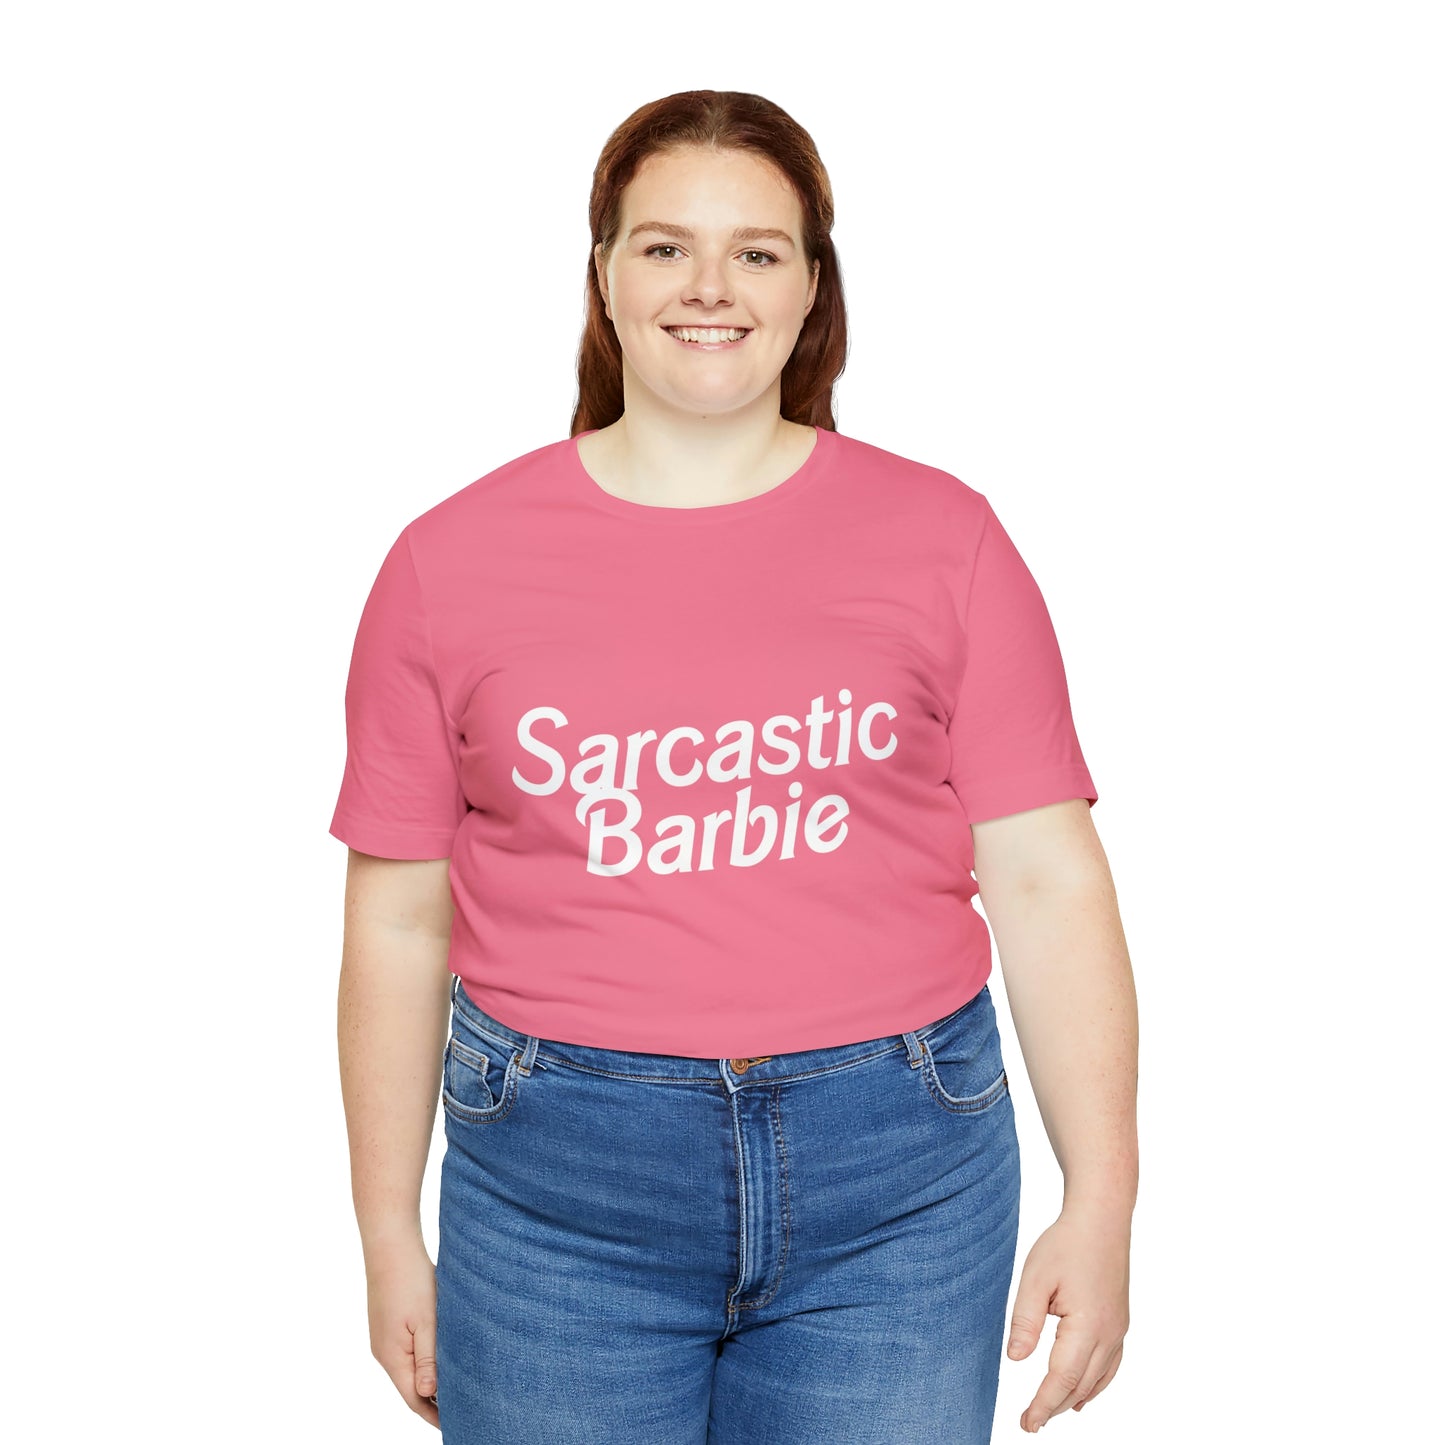 Sarcastic Barbie